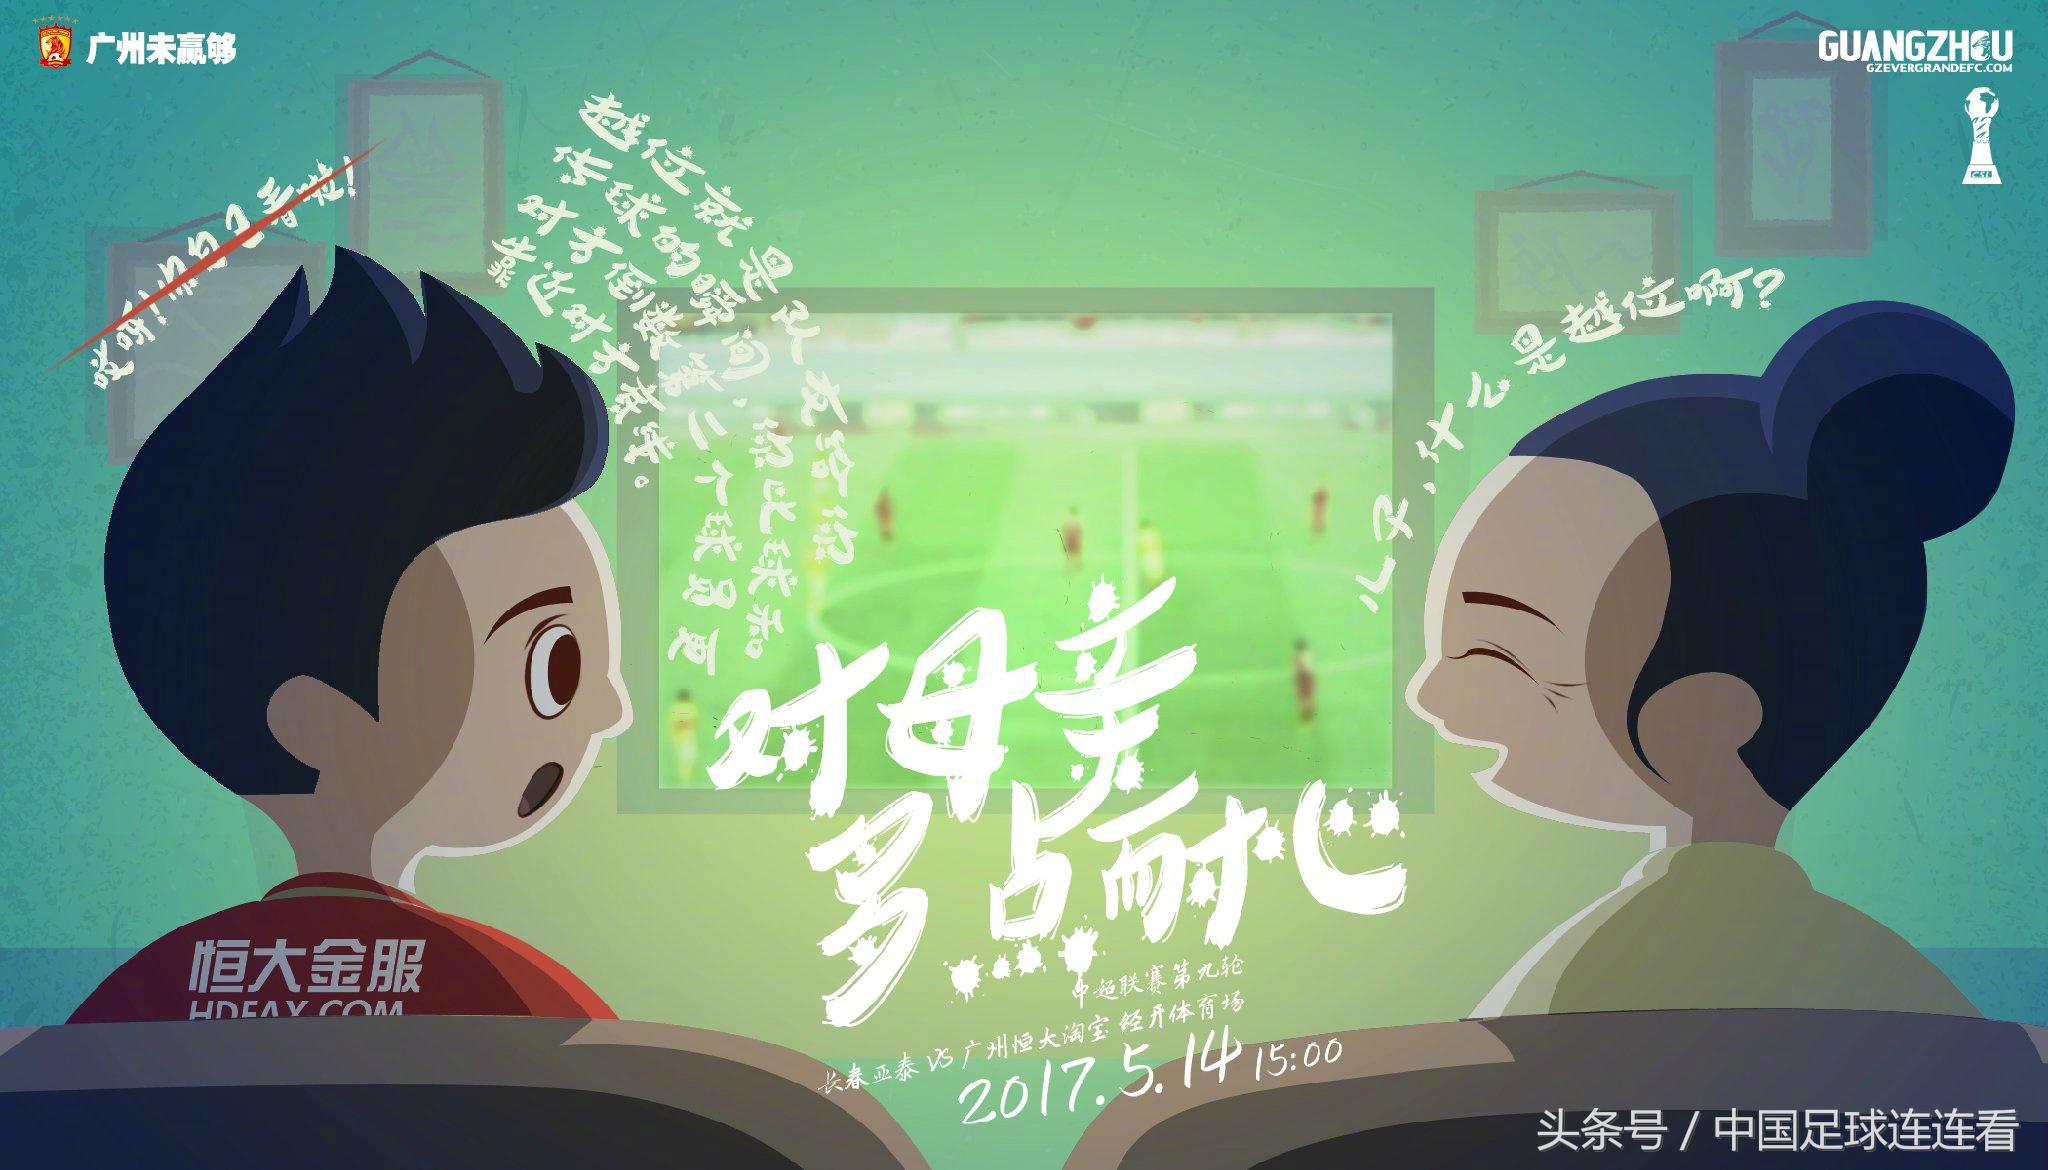 2017中超海报 广州恒大2017赛季海报鉴赏(17)